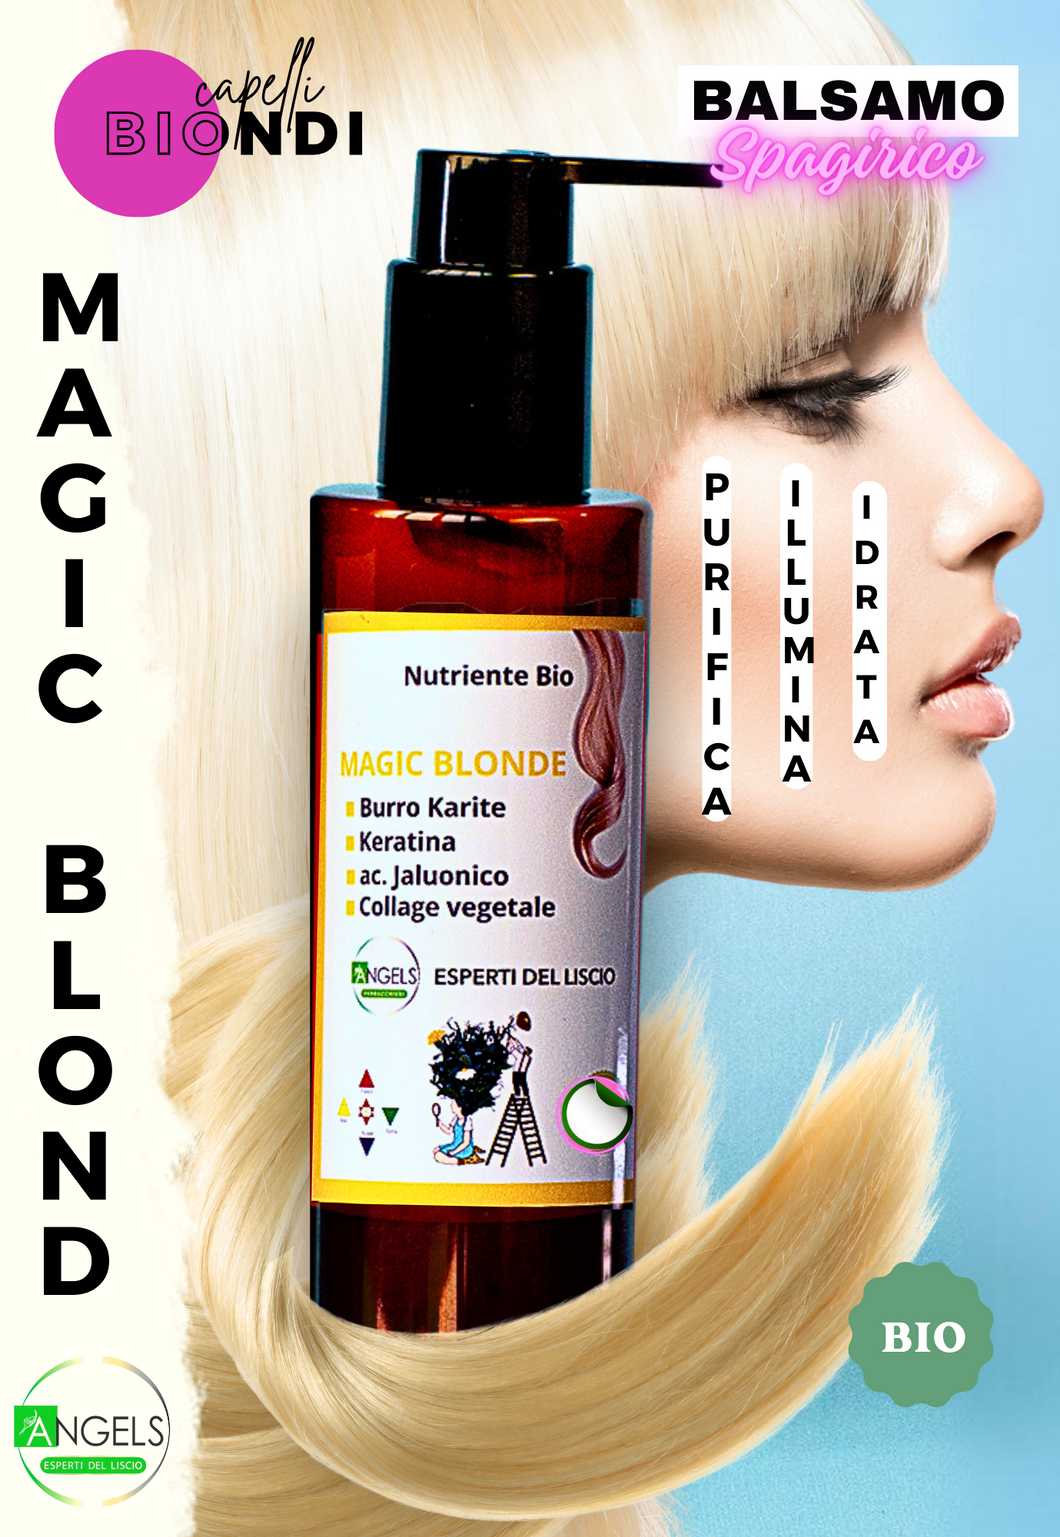 CAPELLI BIONDI - balsamo cheratinico - Studiato  per capelli  decolorati  garantisce un  colore  perfetto -  bio spagirico cheratinico MAGIC BLONDE